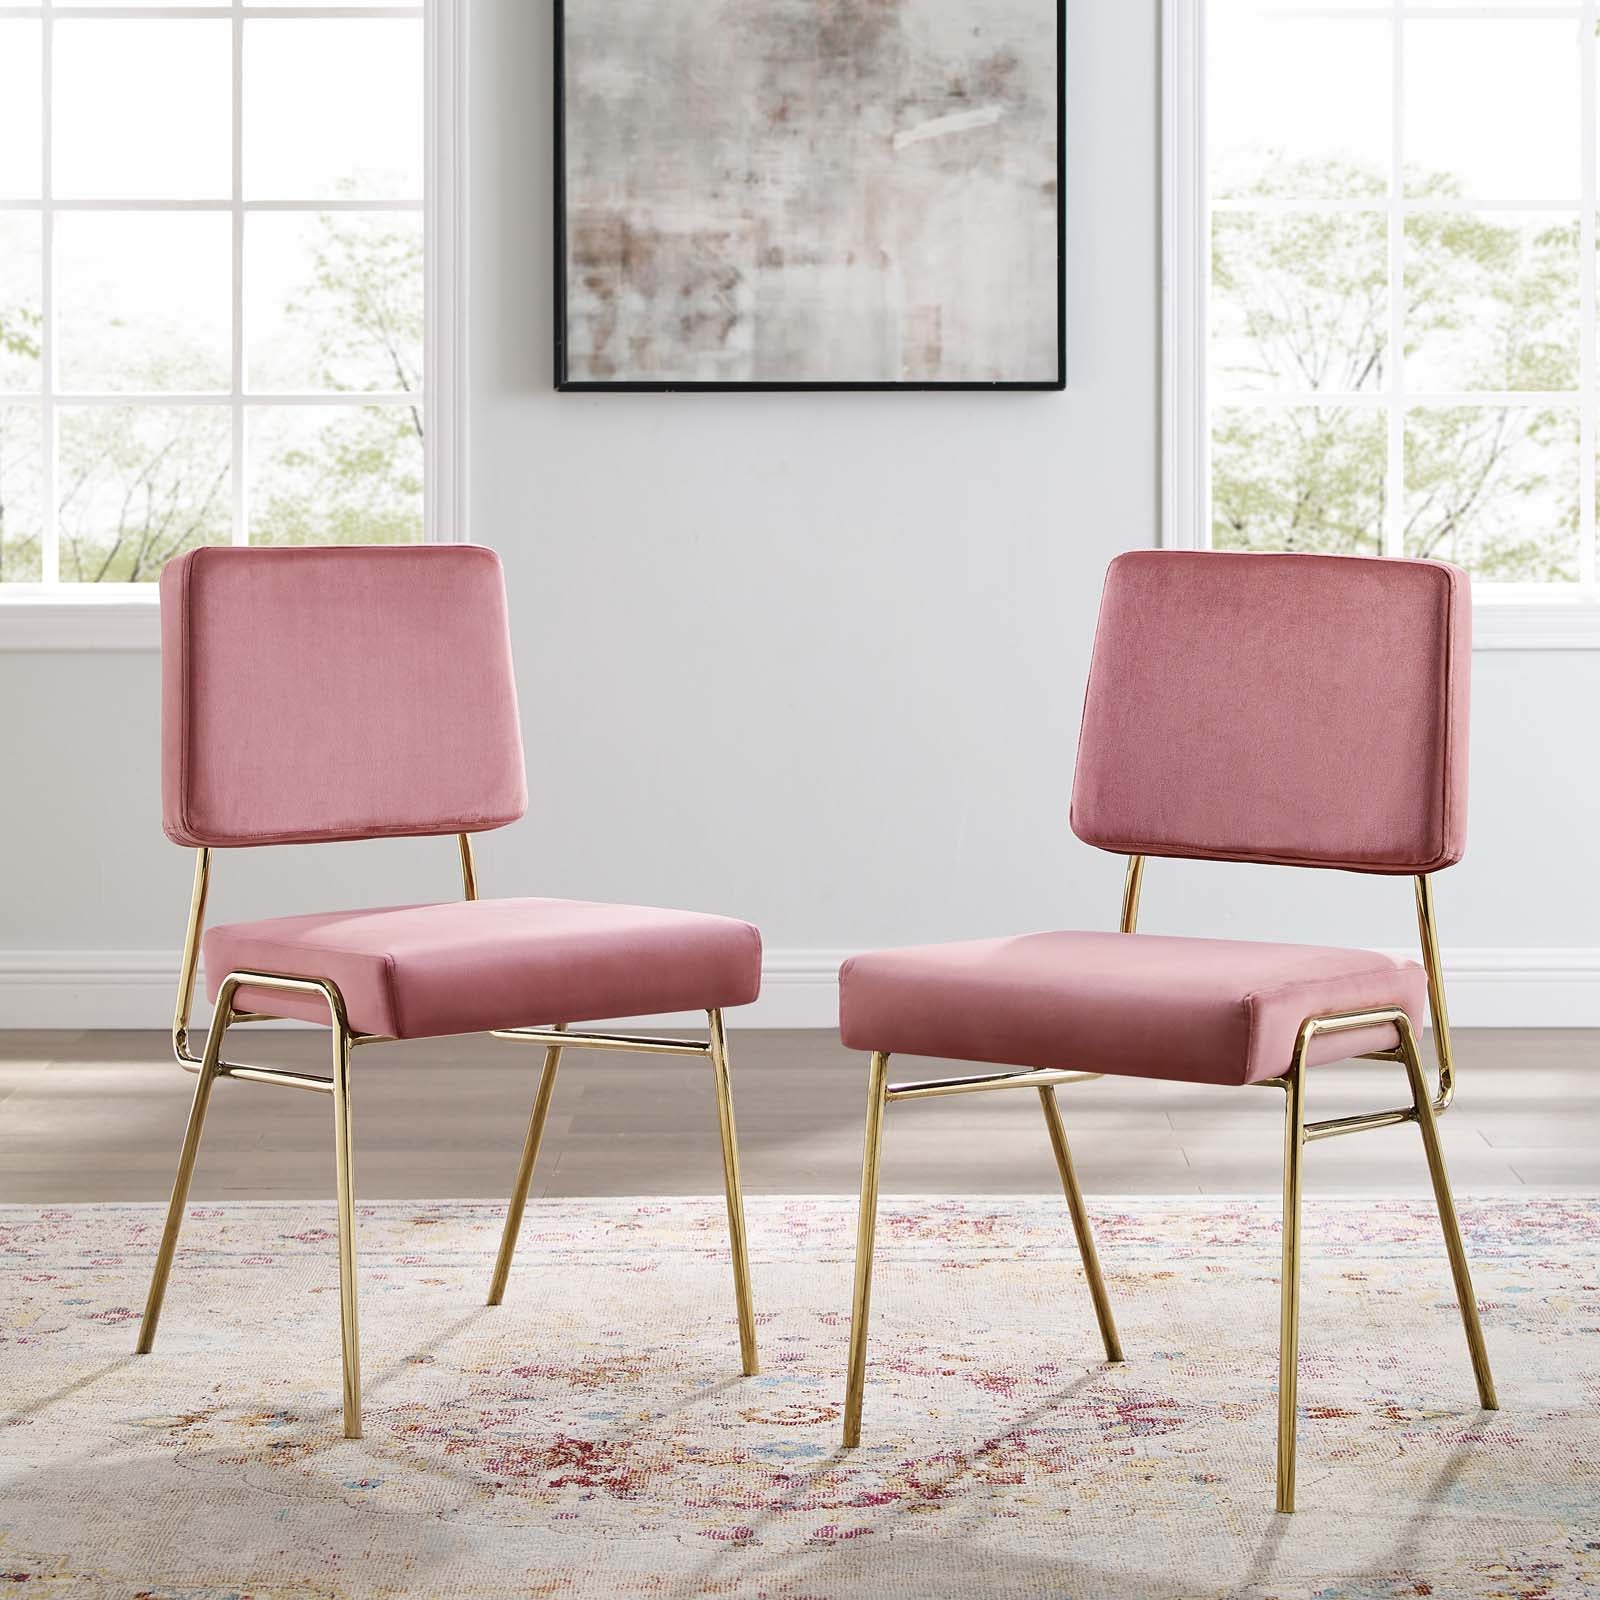 Craft Dining Side Chair Performance Velvet Set of 2 - East Shore Modern Home Furnishings